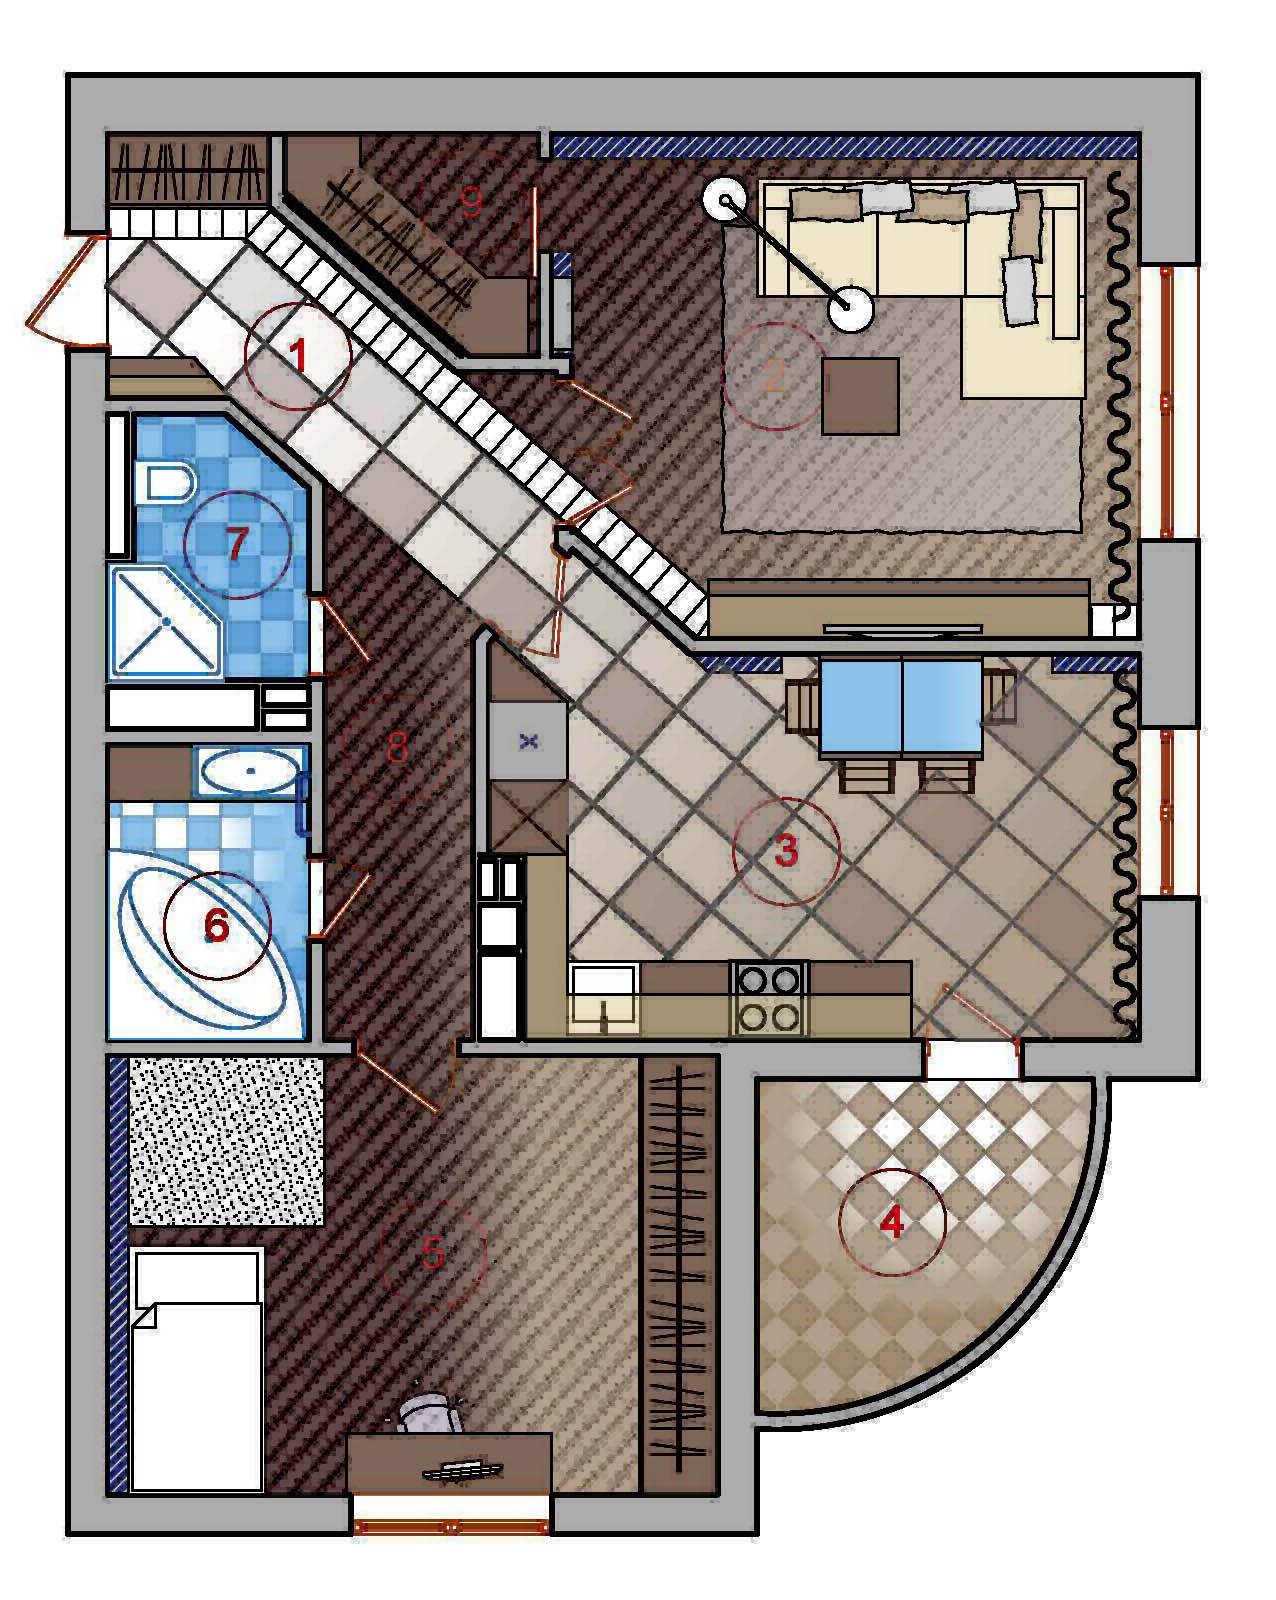 Перепланировка однокомнатной квартиры в двухкомнатную, в студию: как из однушки сделать двушку, способы, лучшие идеи и особенности реализации жилья с разными размерами (35, 40, 42 44, 52 кв. м)